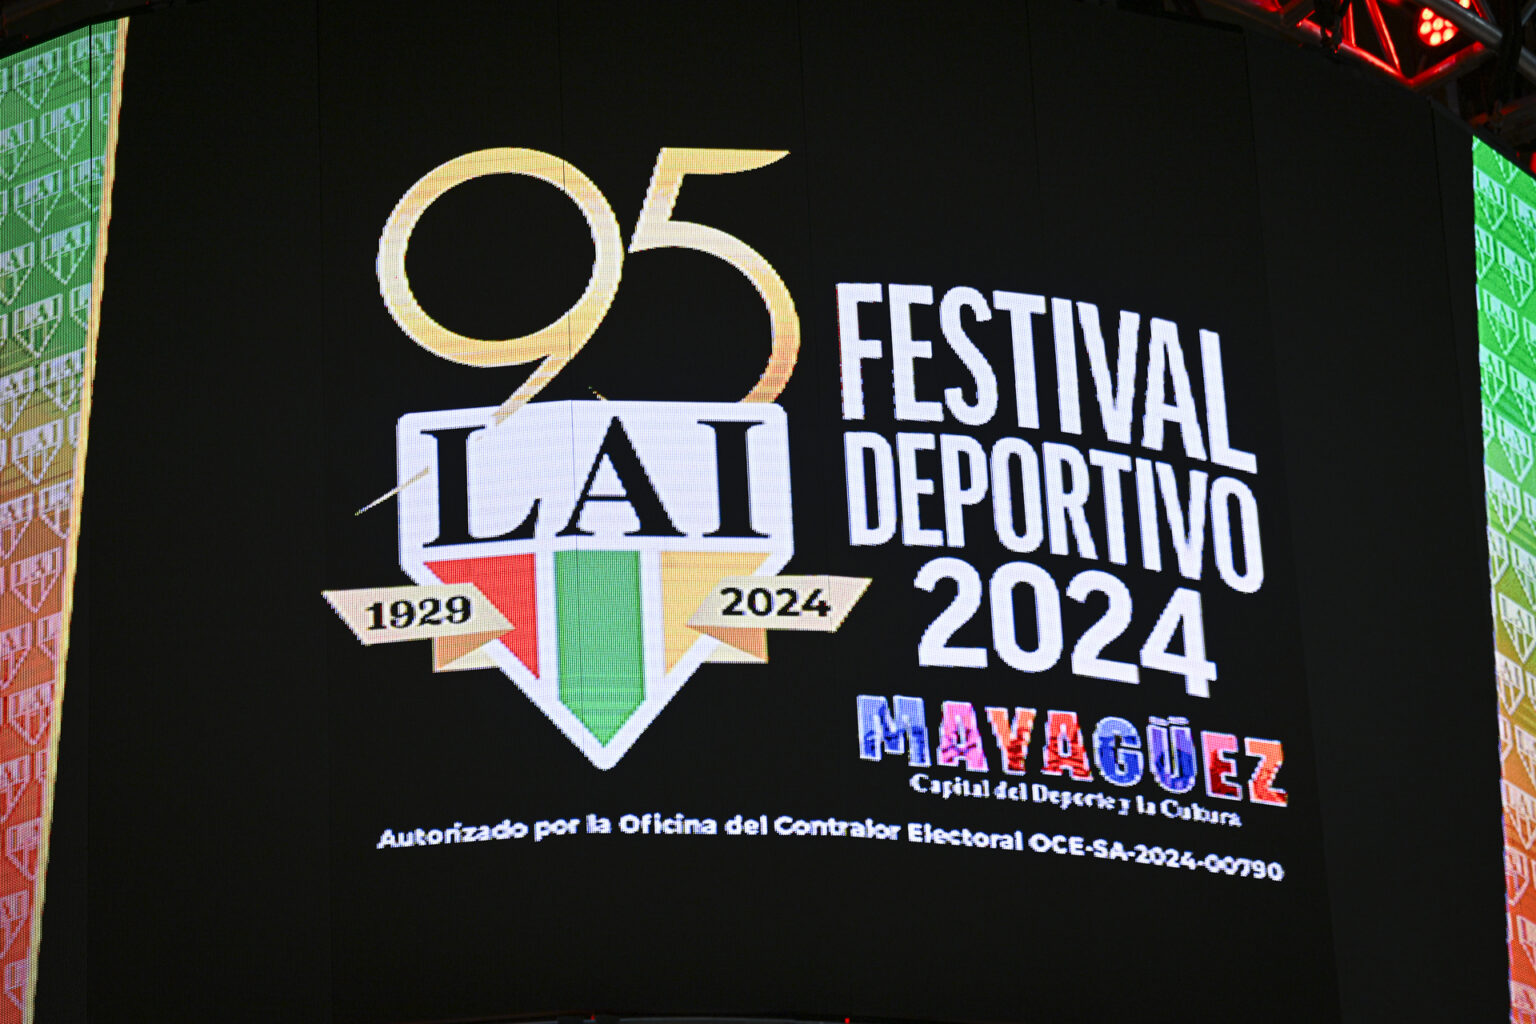 el festival deportivo será del 17 al 27 de abril en mayagüez. (lai)